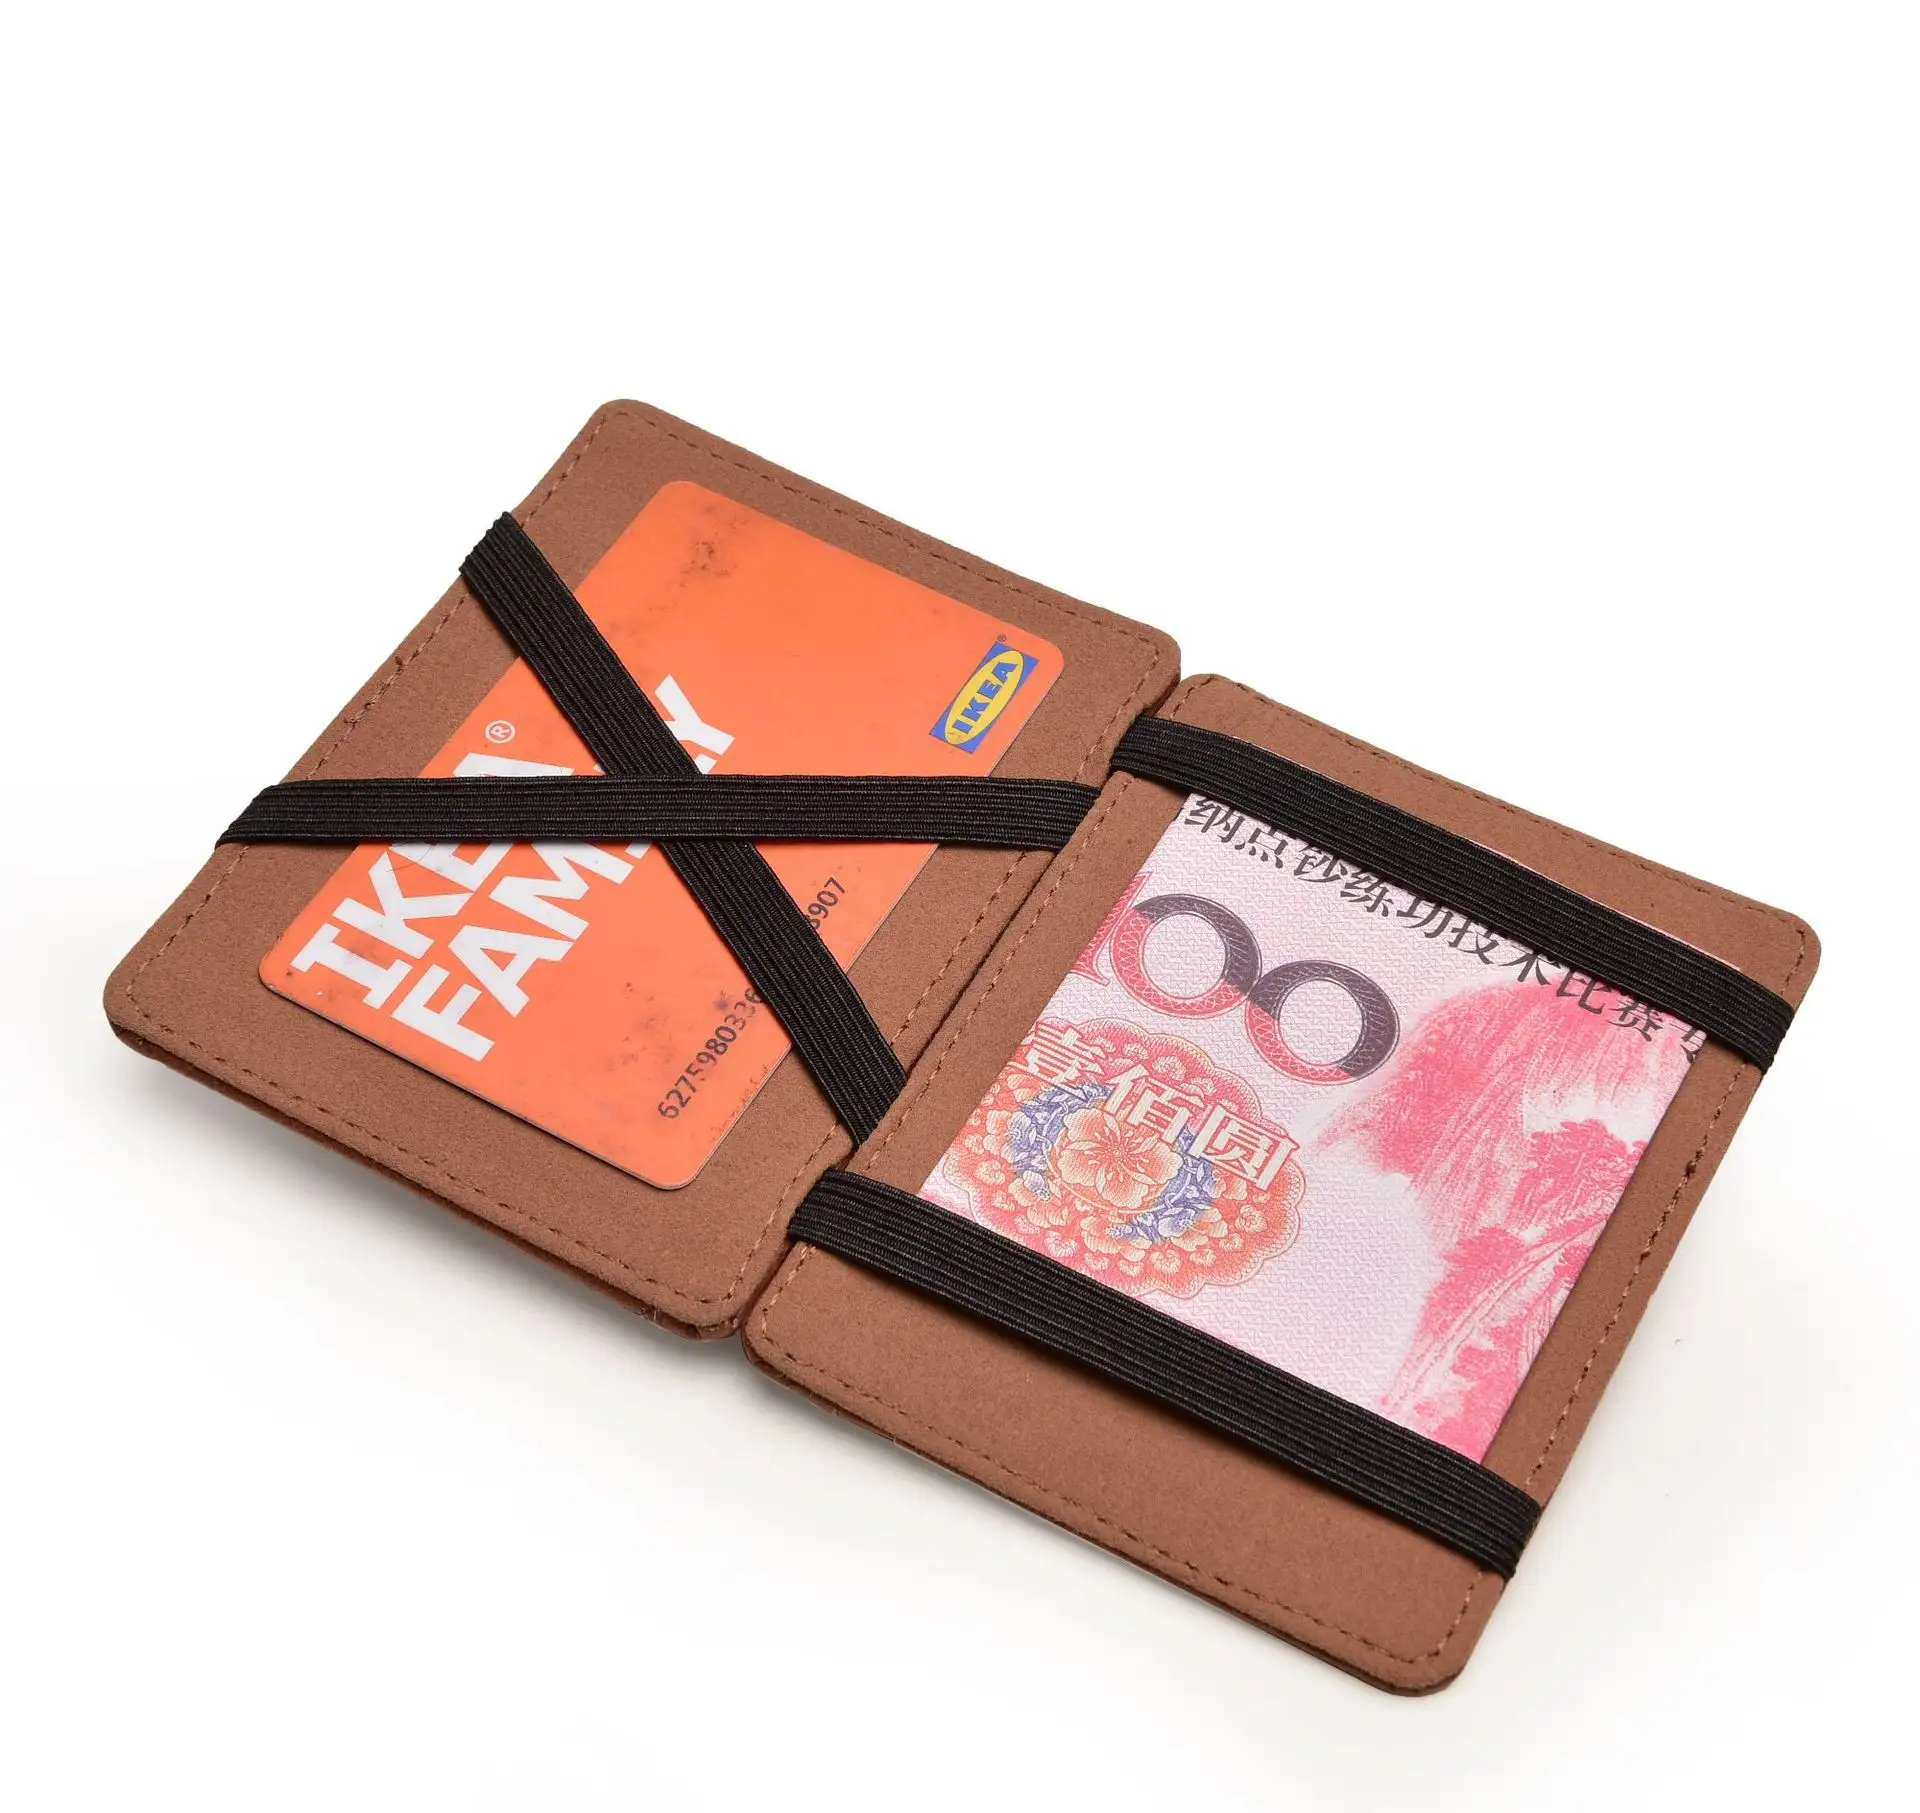 PU sihirli cüzdan kılıf kat çanta minimalist tarzı moda erkekler için avrupa doğal kart tutucu sihirli cüzdan deri